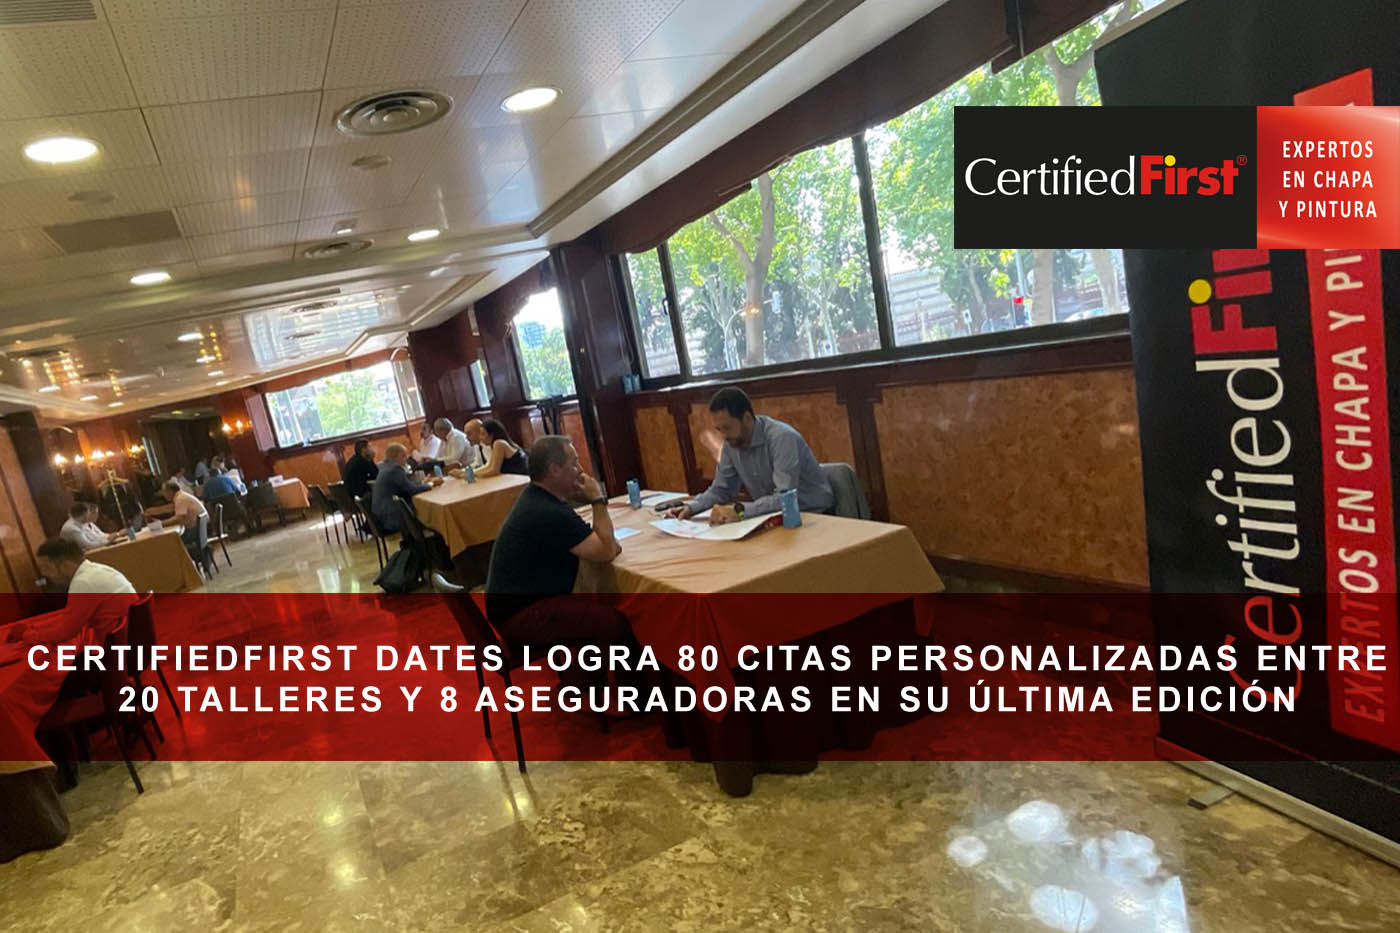 CertifiedFirst Dates logra 80 citas personalizadas entre 20 talleres y 8 aseguradoras en su última edición celebrada en Madrid